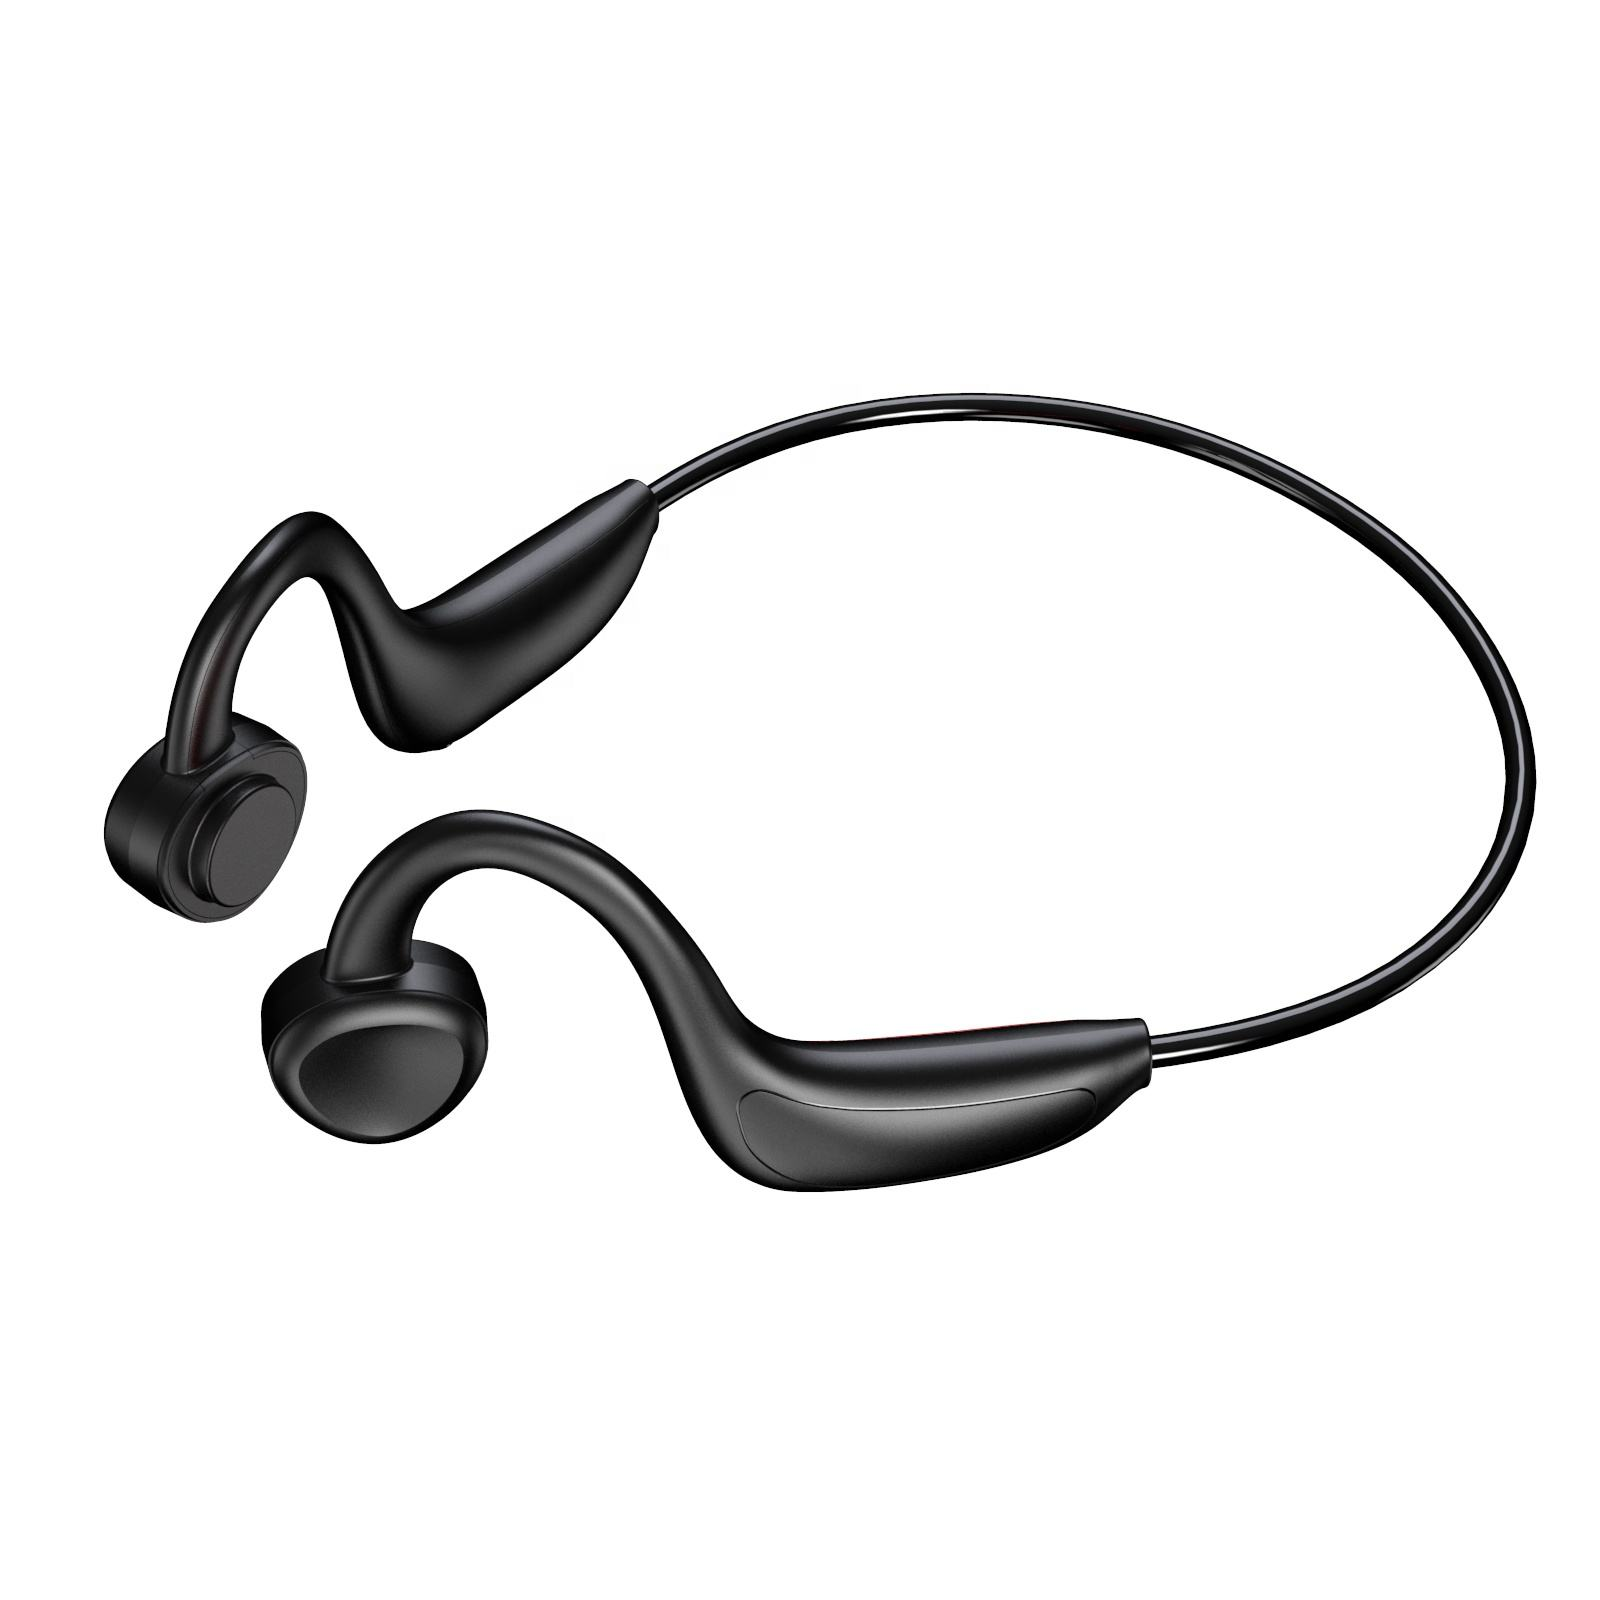 INF Gehörschutz, Luftleitungs-Funkkopfhörer, In-ear schwarz Kopfhörer, offener Kopfhörer